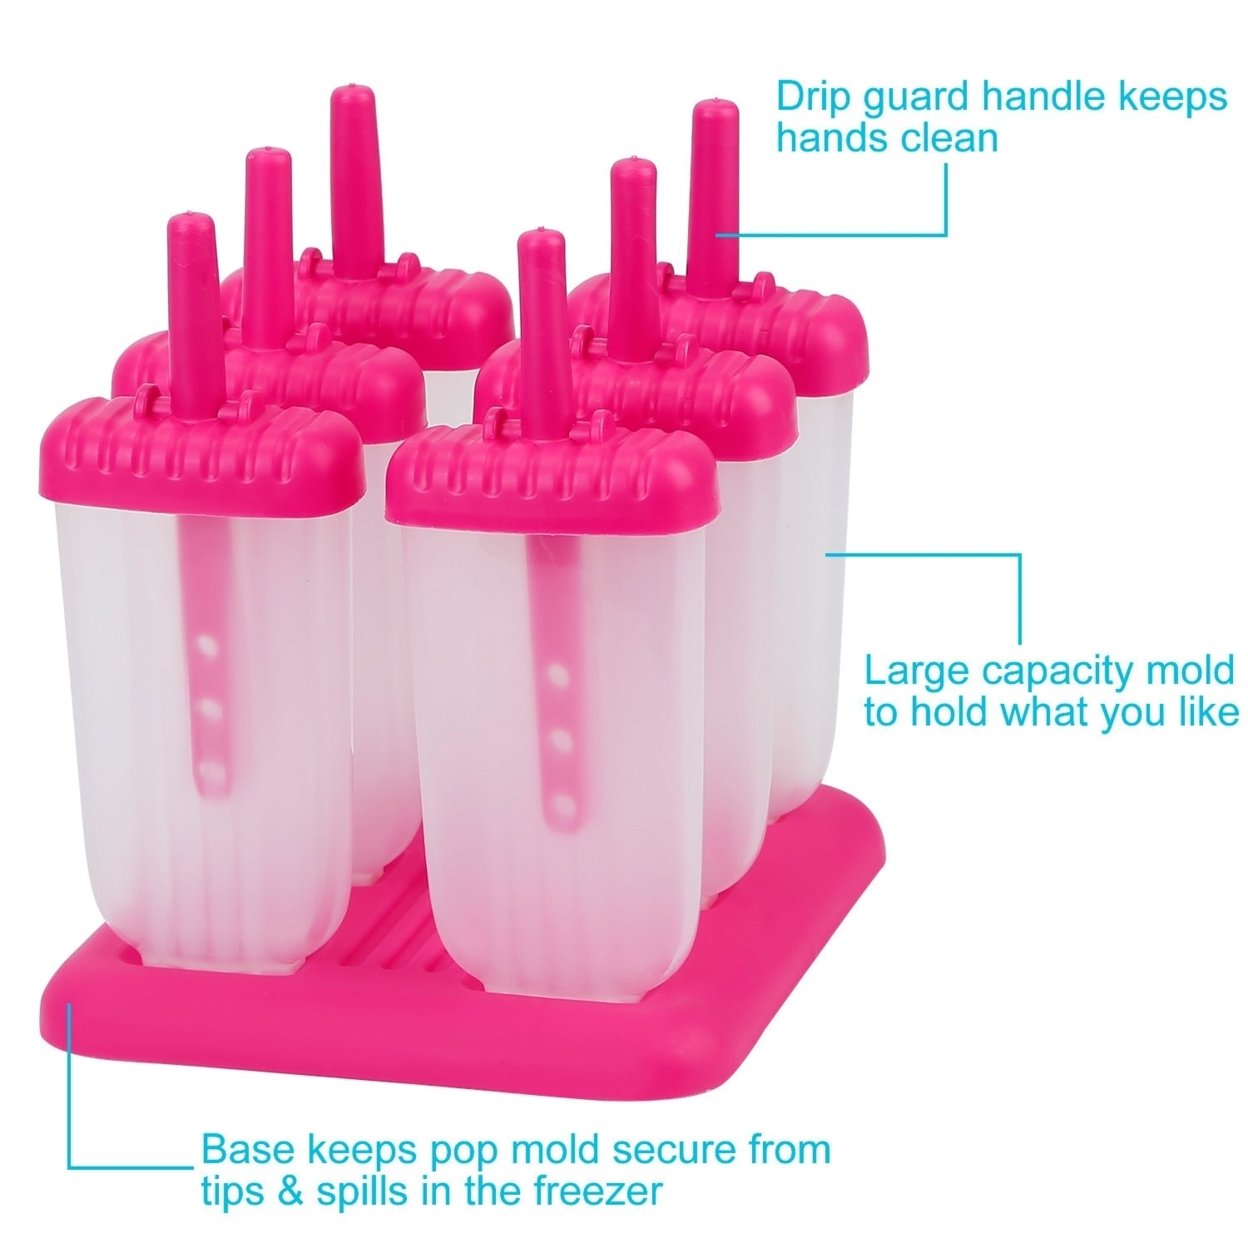 SKUSHOPS 6Pcs Popsicle Molds Reusable Ice Cream DIY Ice Pop Maker Ice Bar Maker Plastic Popsicle Mold For Homemade Iced Snacks